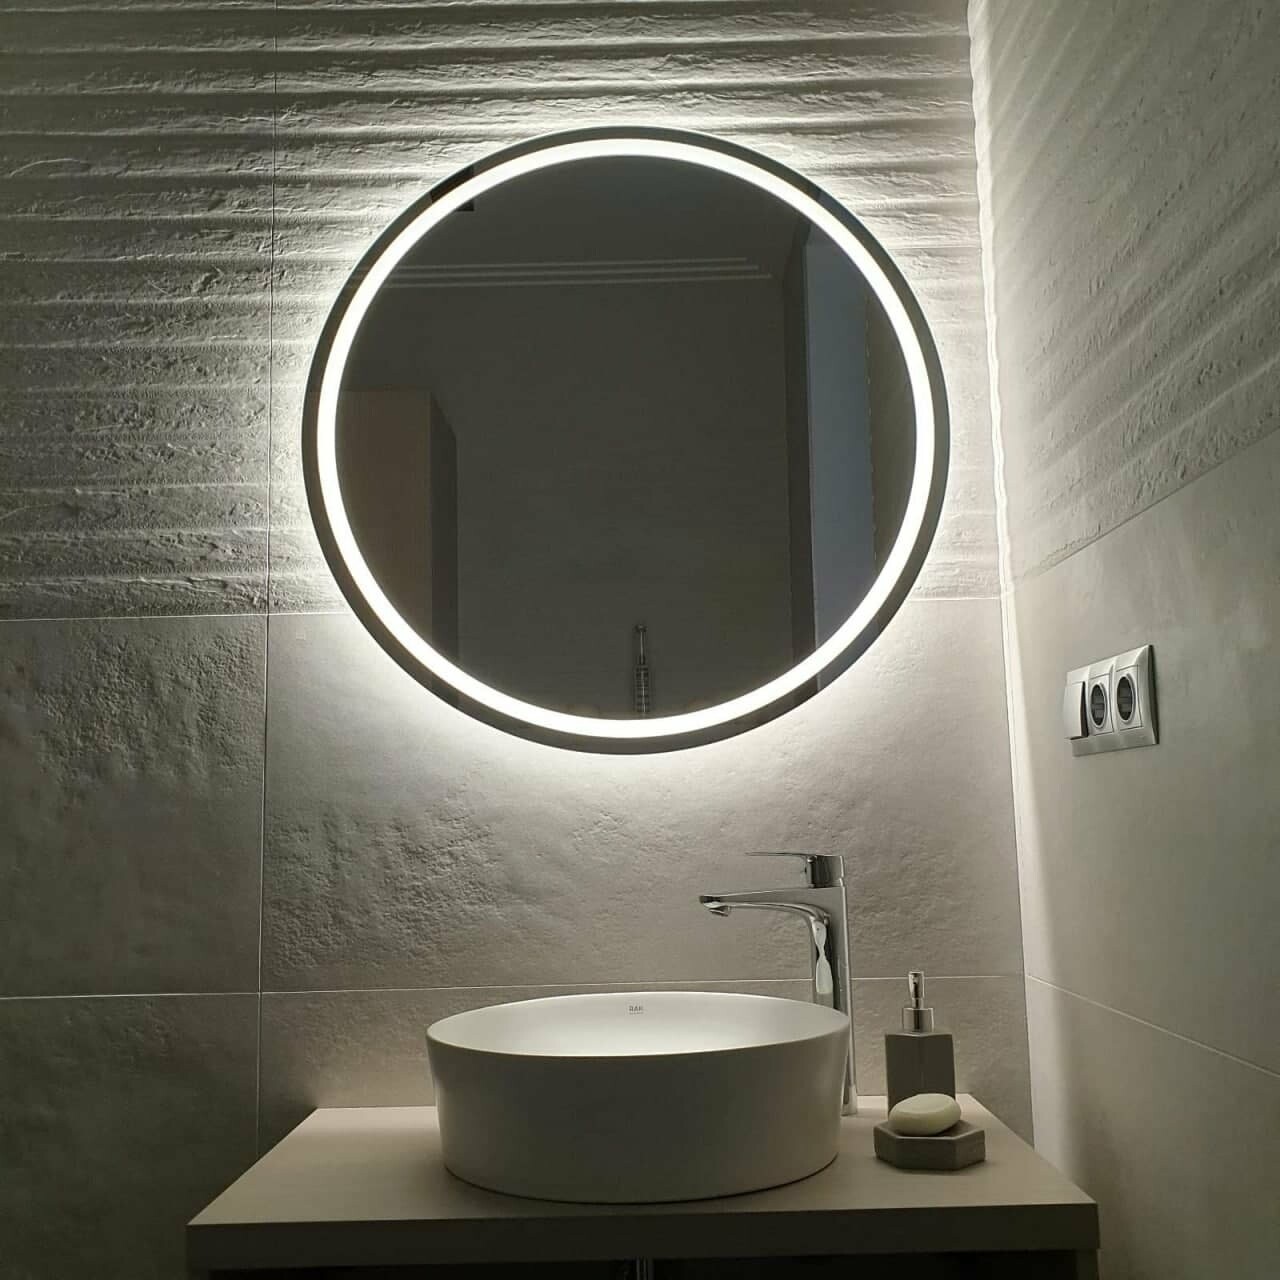 Зеркала с LED подсветкой